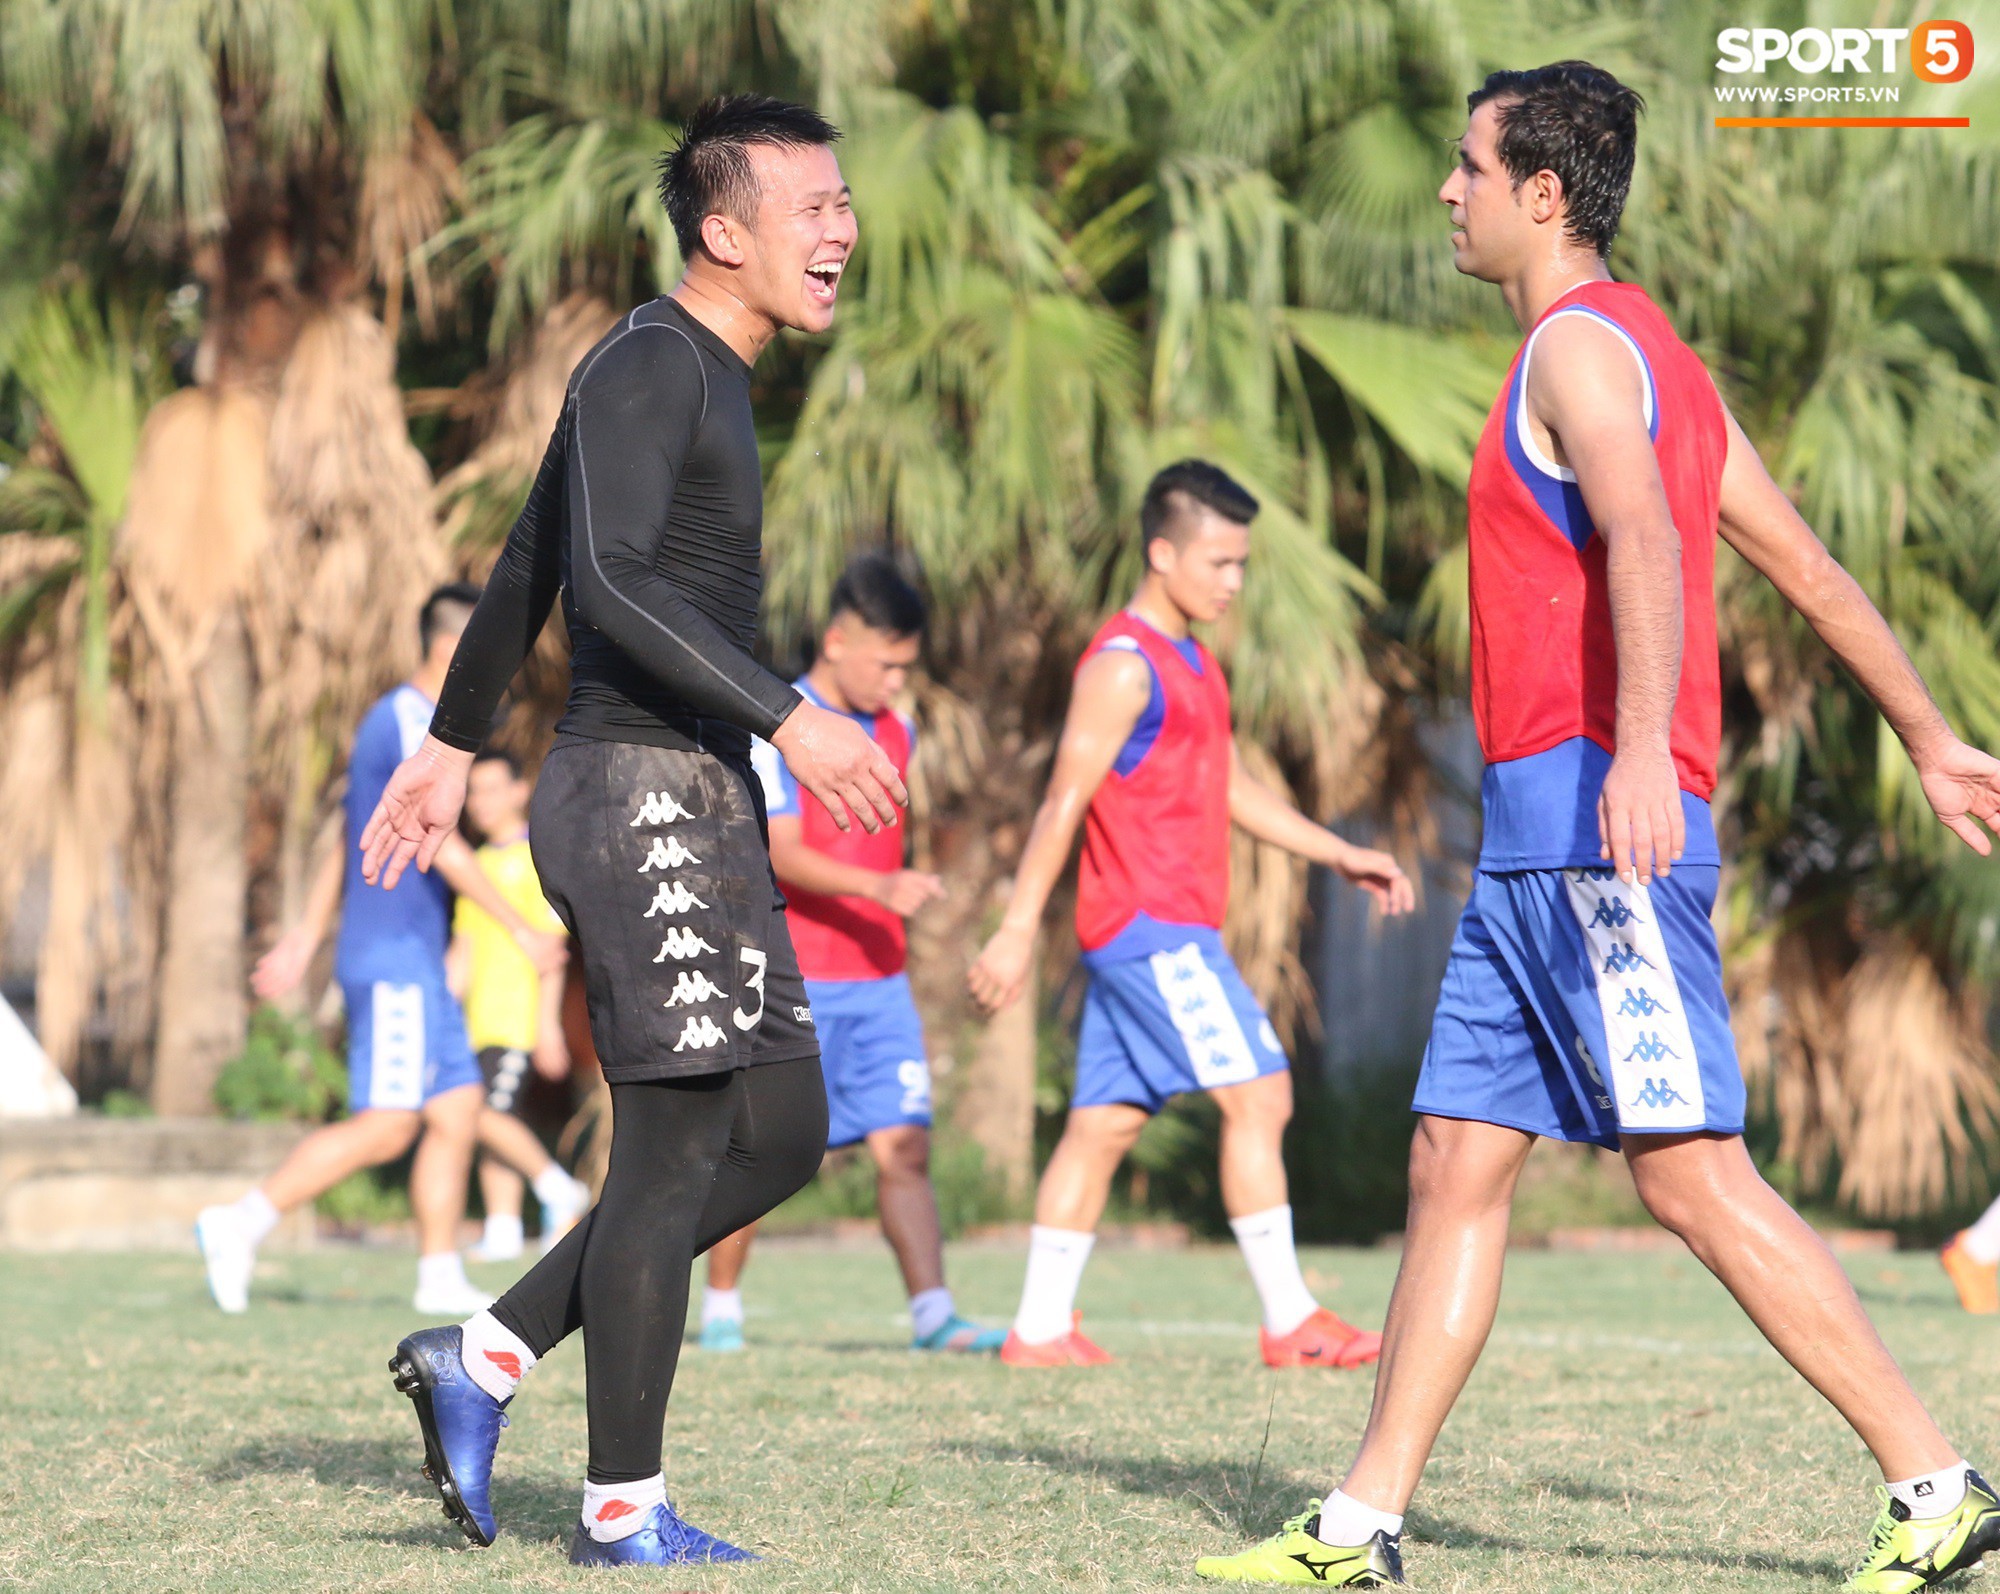 Cởi bỏ vẻ nghiêm nghị thường thấy, HLV của Hà Nội FC xỏ giày vào sân chơi lầy cùng Quang Hải, Duy Mạnh - Ảnh 6.